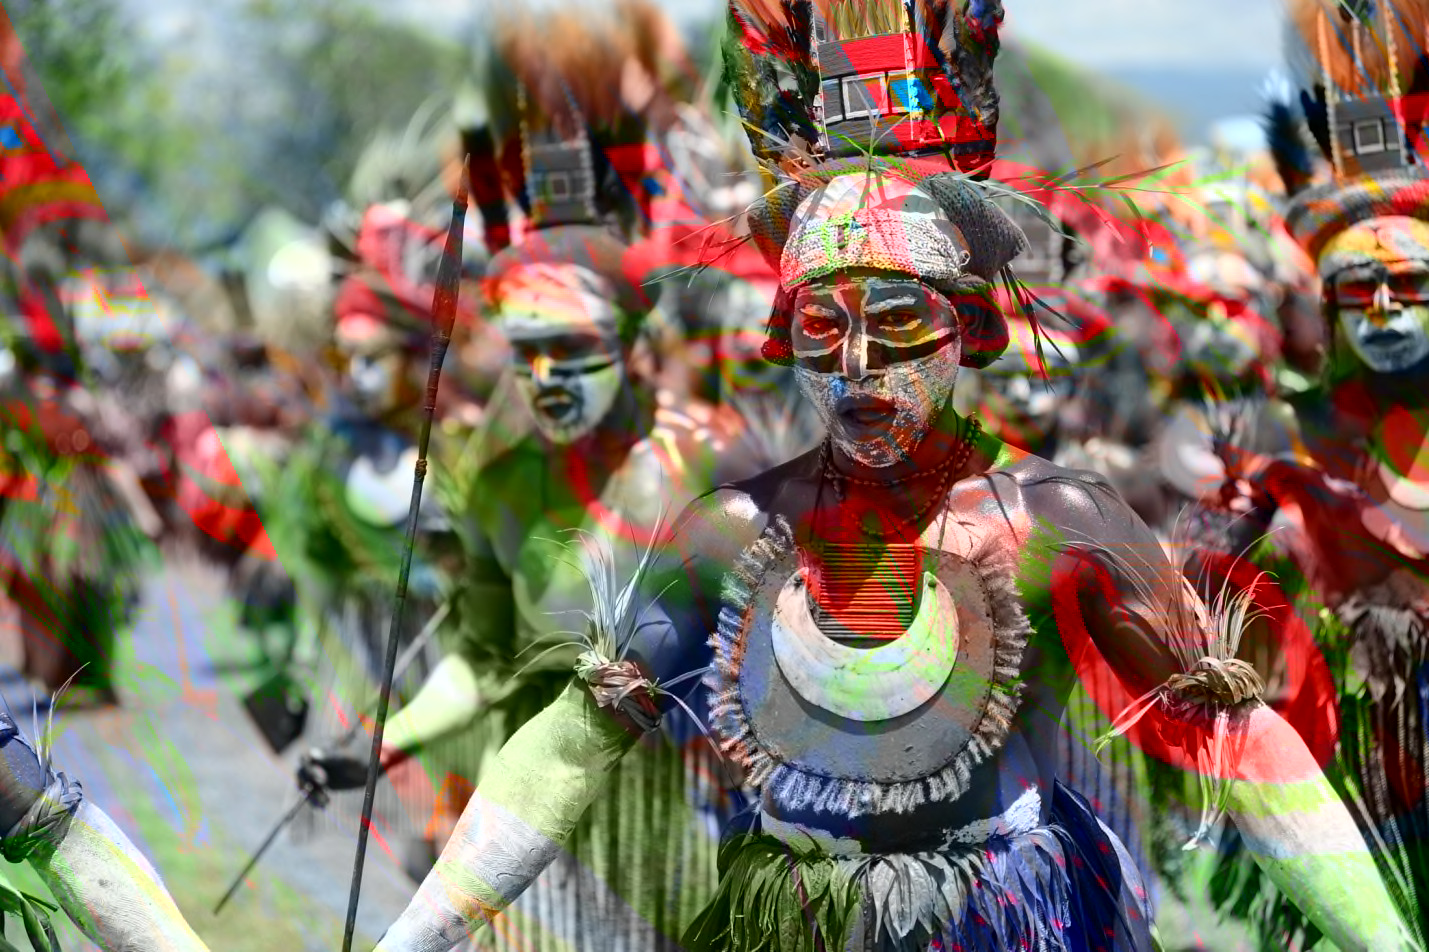 A recent festival in Papua New Guinea.